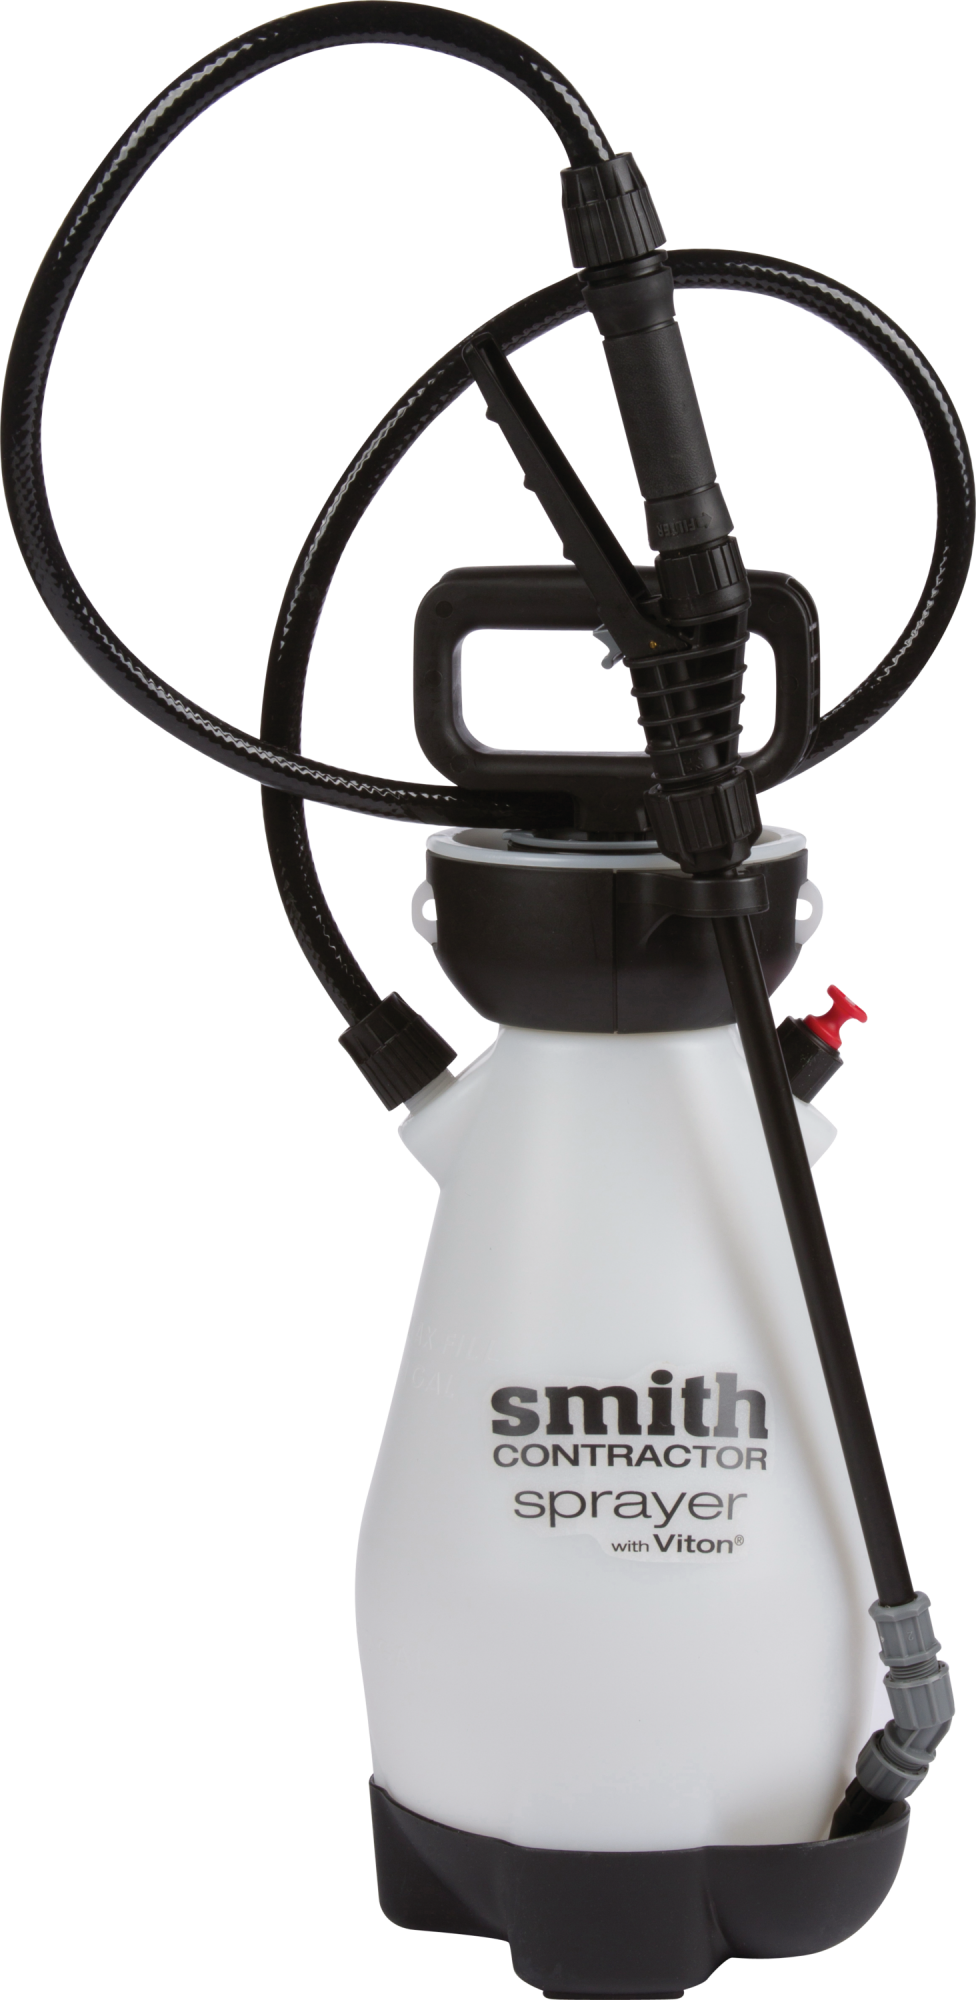 Smith Contractor 1 Gallon Sprayer